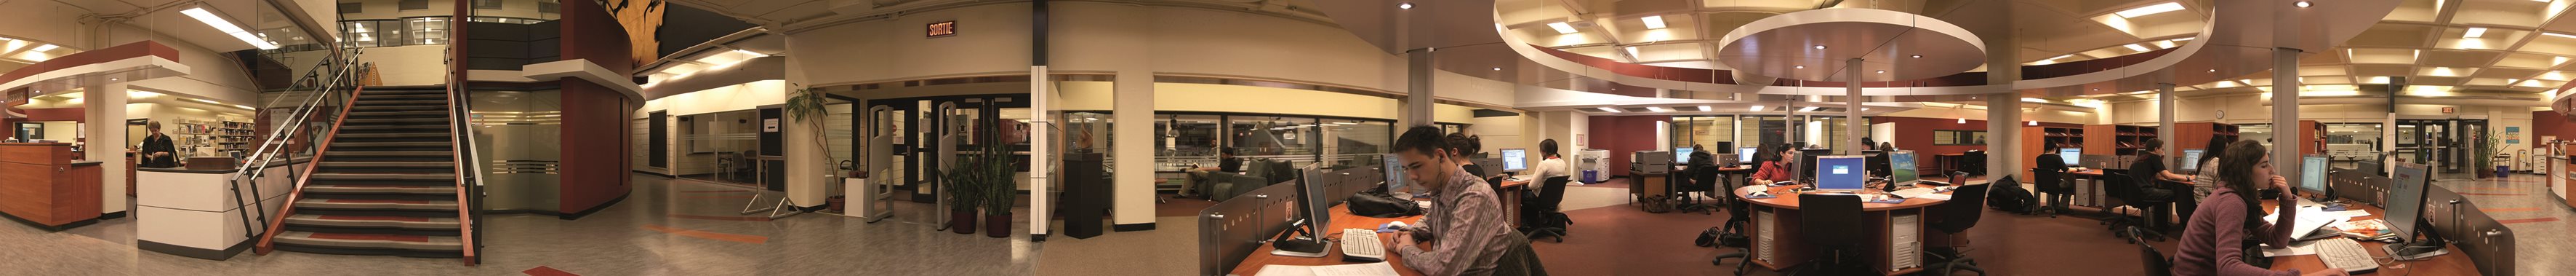 Panorama 360 de la bibliothèque du campus de Québec du Cégep Limoilou 